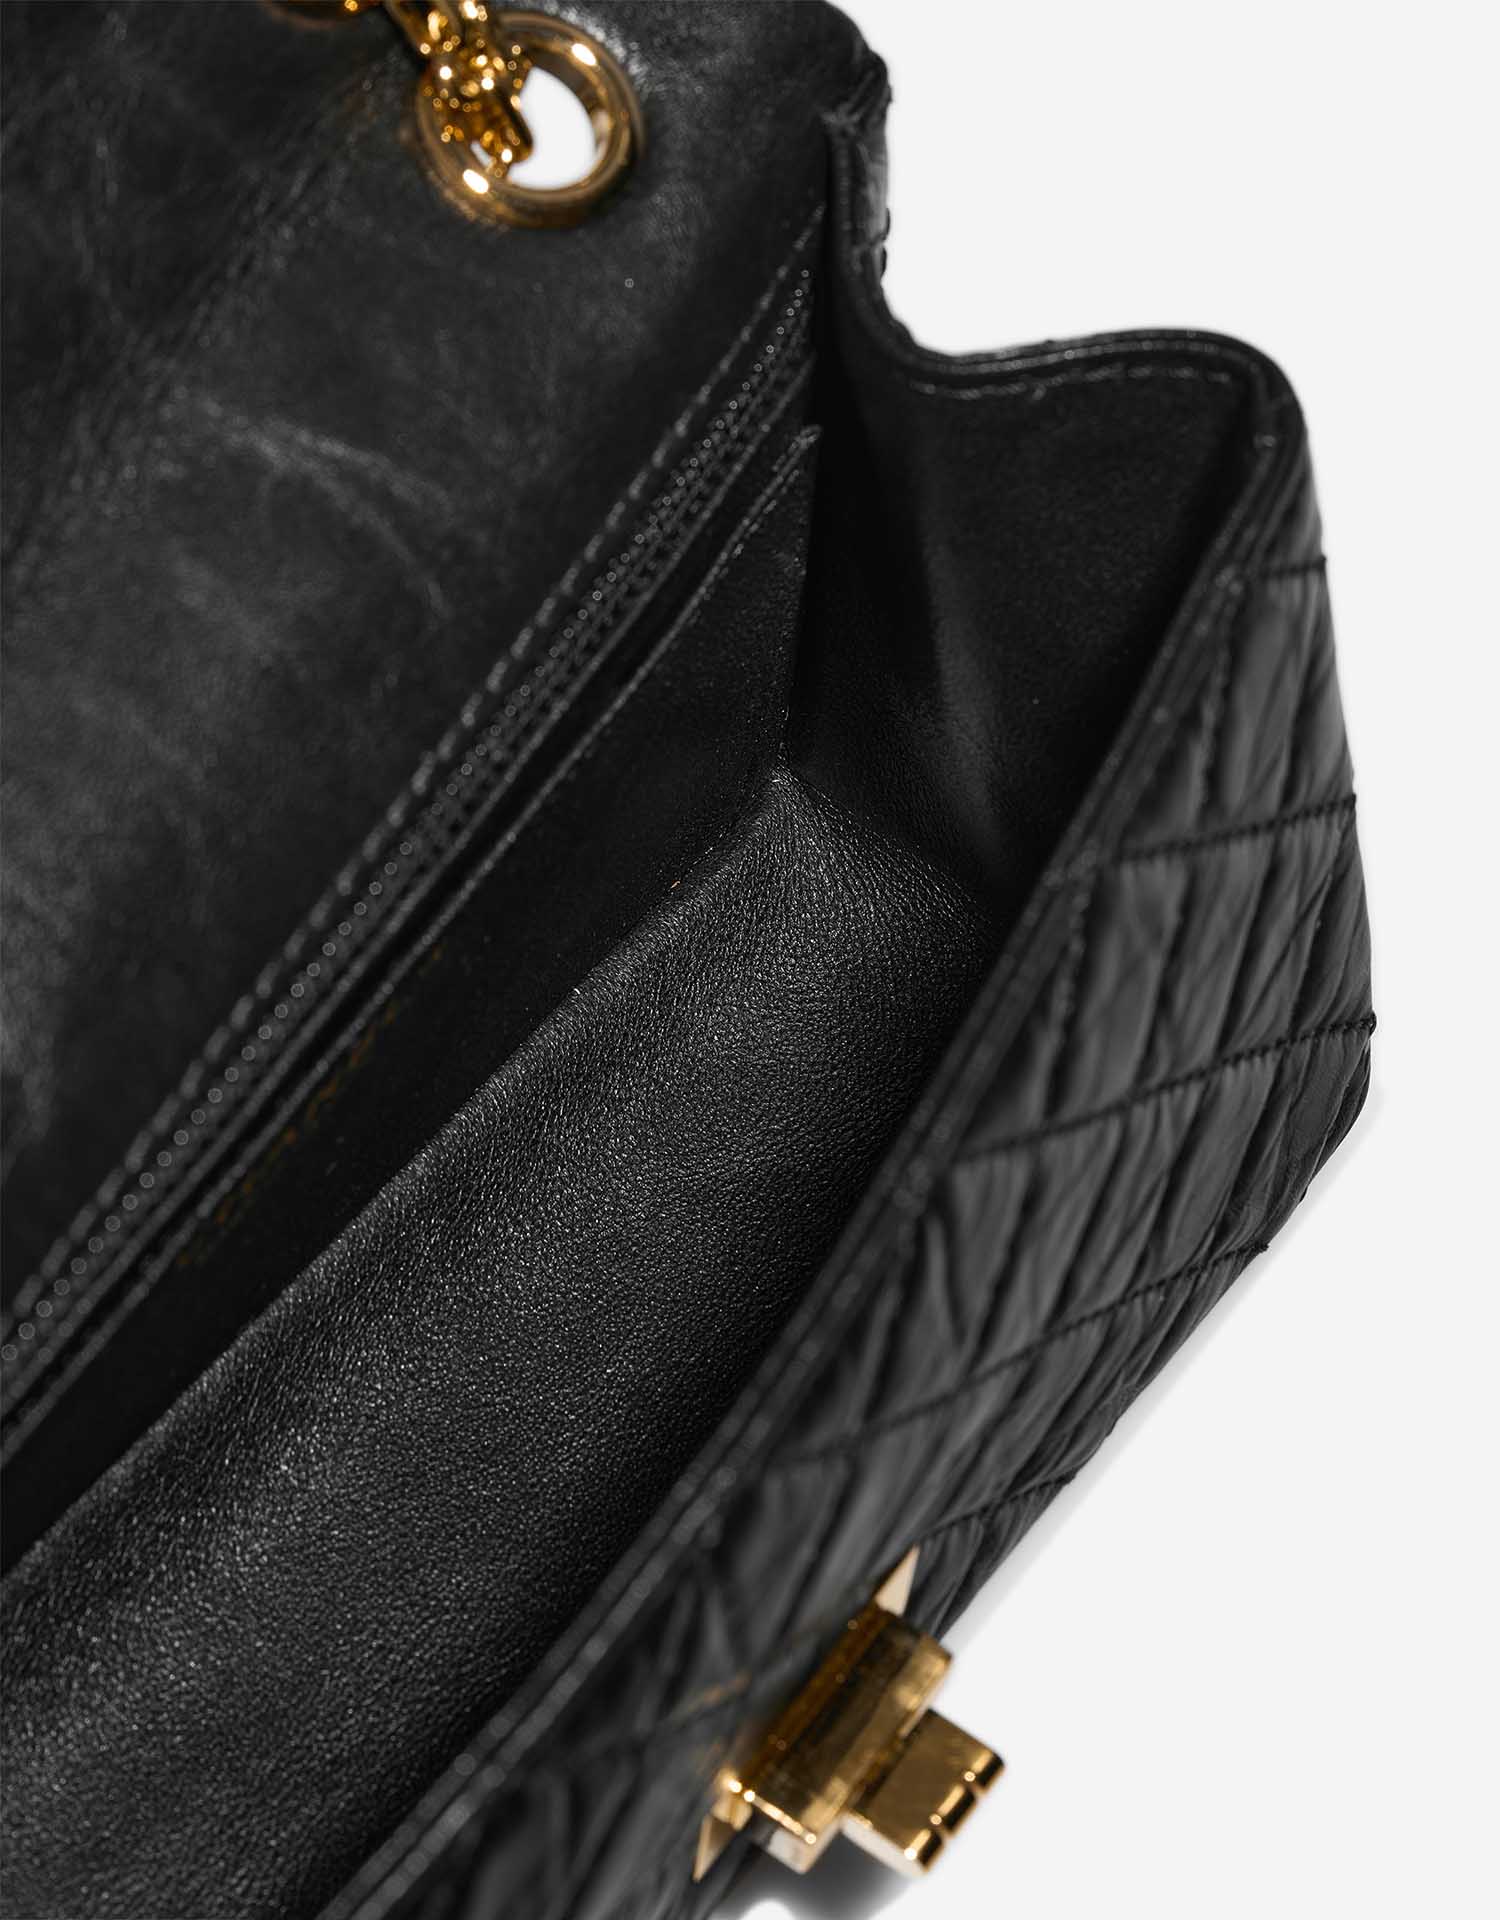 Chanel 255Reissue 224 Black Inside | Verkaufen Sie Ihre Designer-Tasche auf Saclab.com